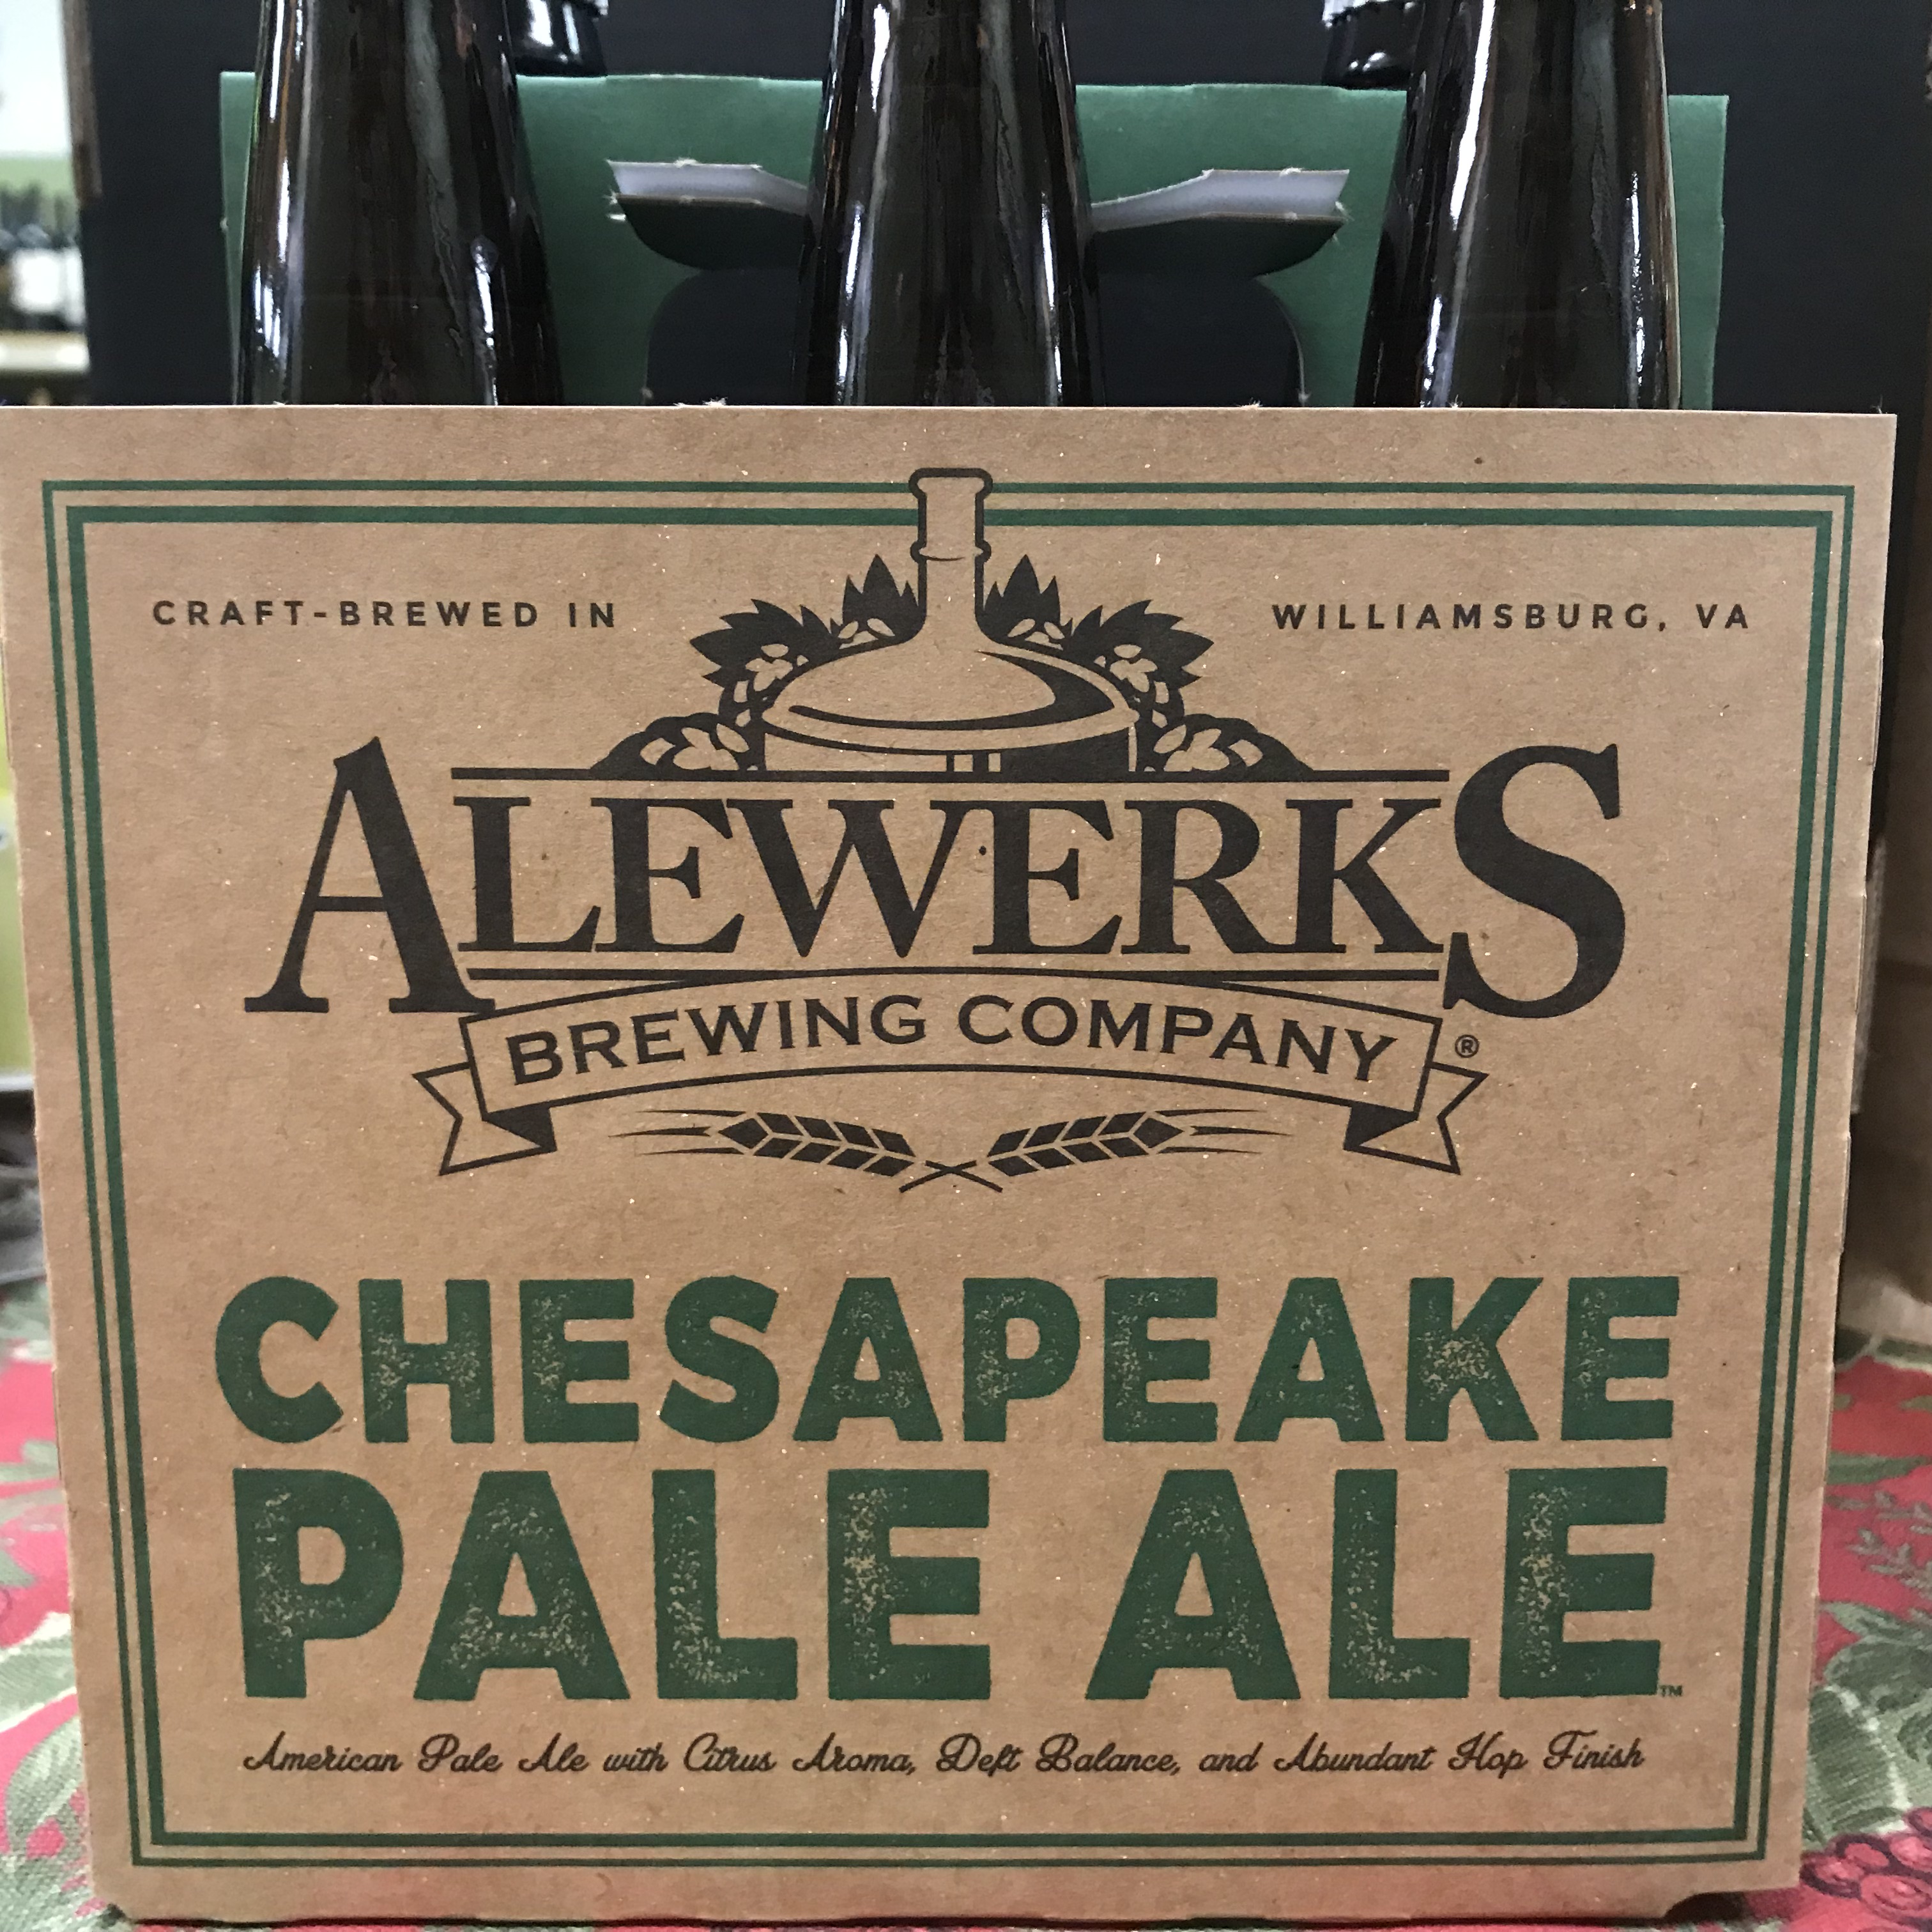 Alewerks Chesapeake Pale Ale 6 pack 12oz bottles